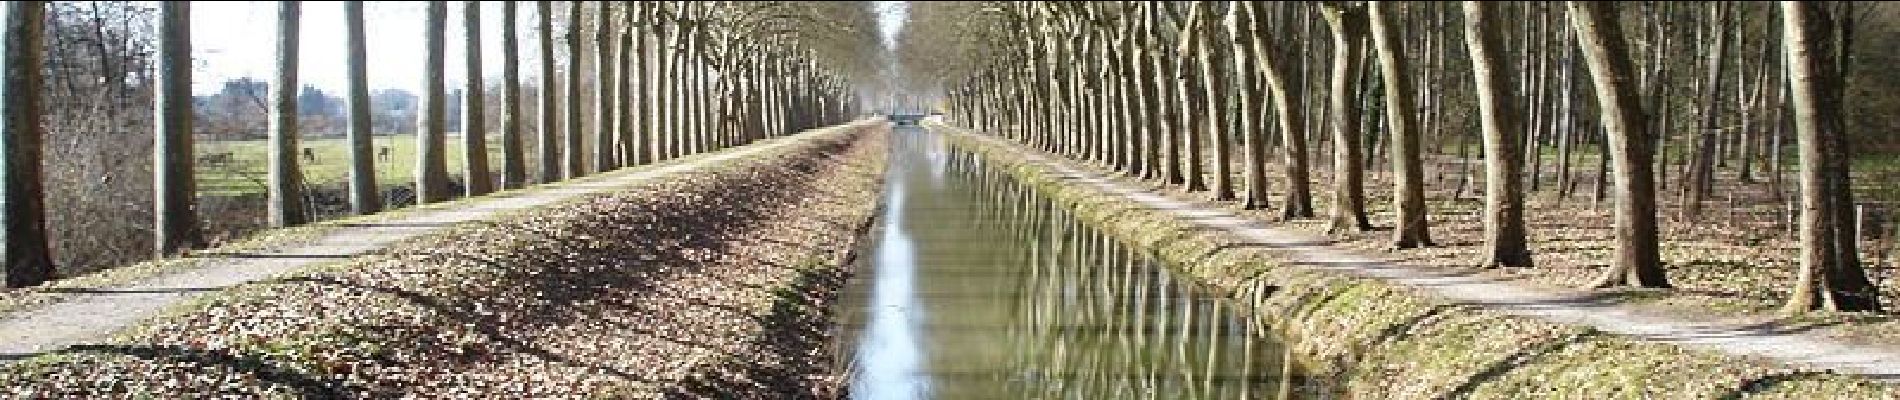 Randonnée Cheval Blancafort - Le Canal de la Sauldre - Blancafort - Photo